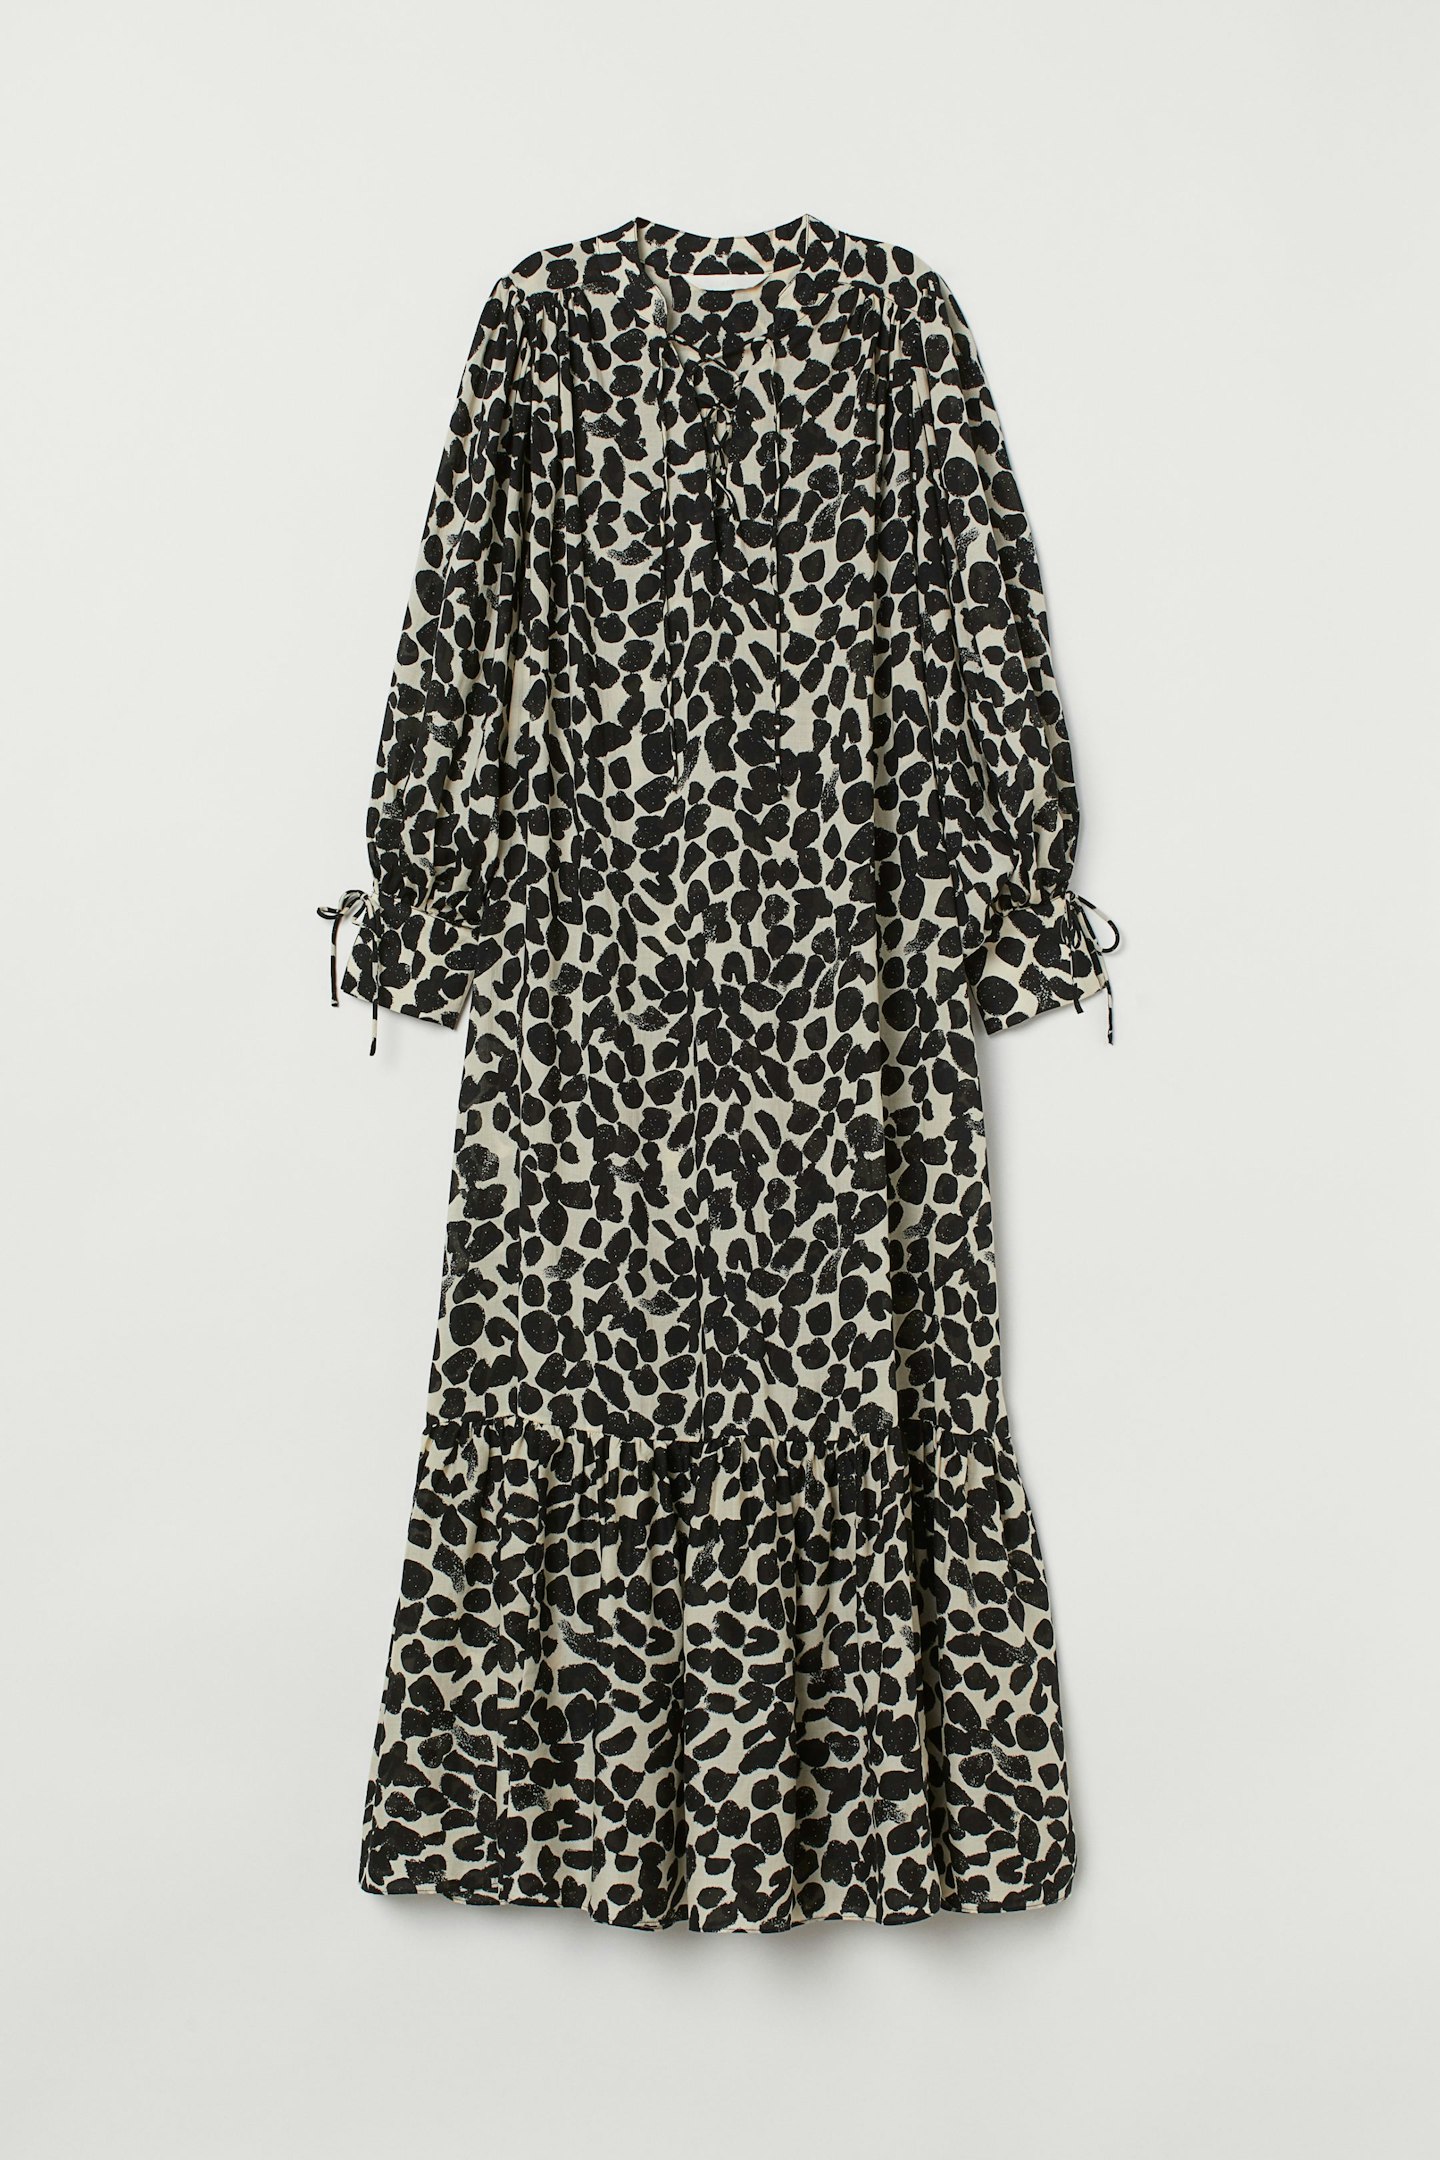 H&M, Printed Dress, £34.99